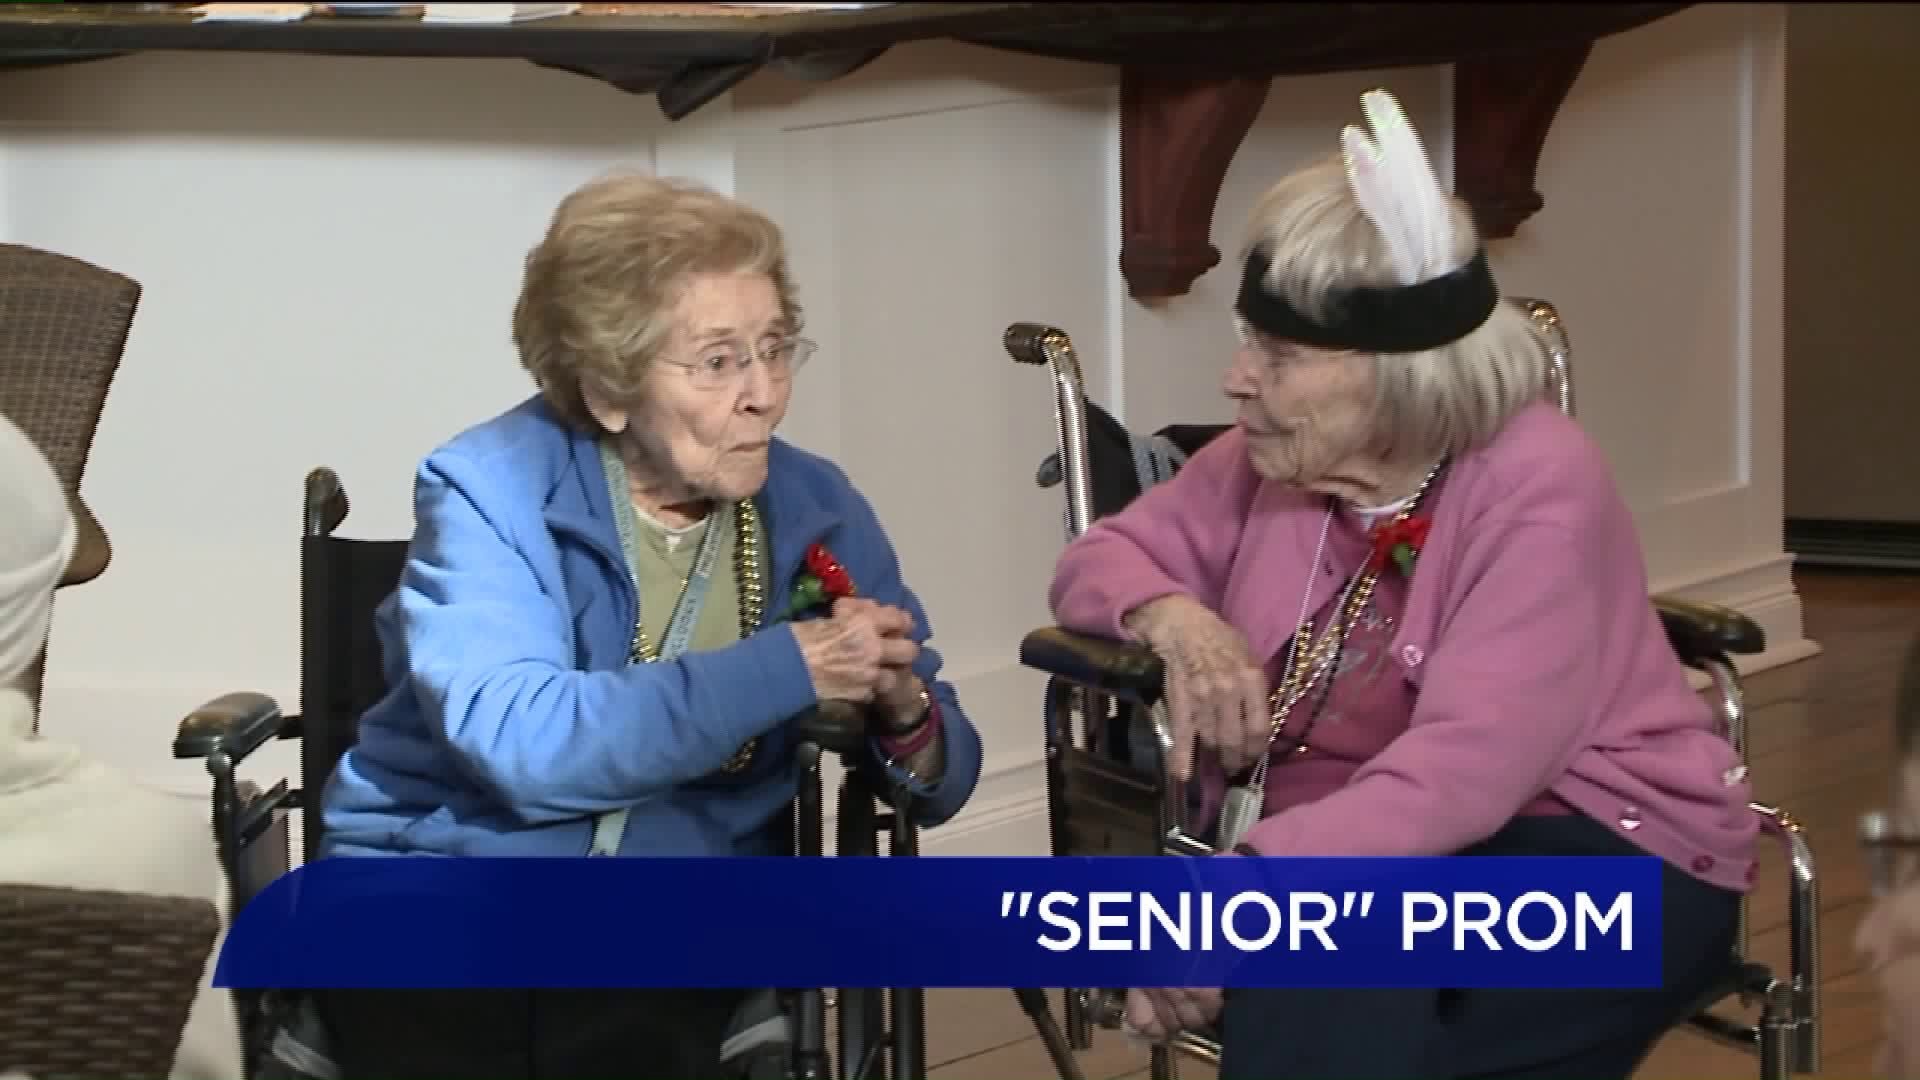 'Senior' Prom for Senior Citizens